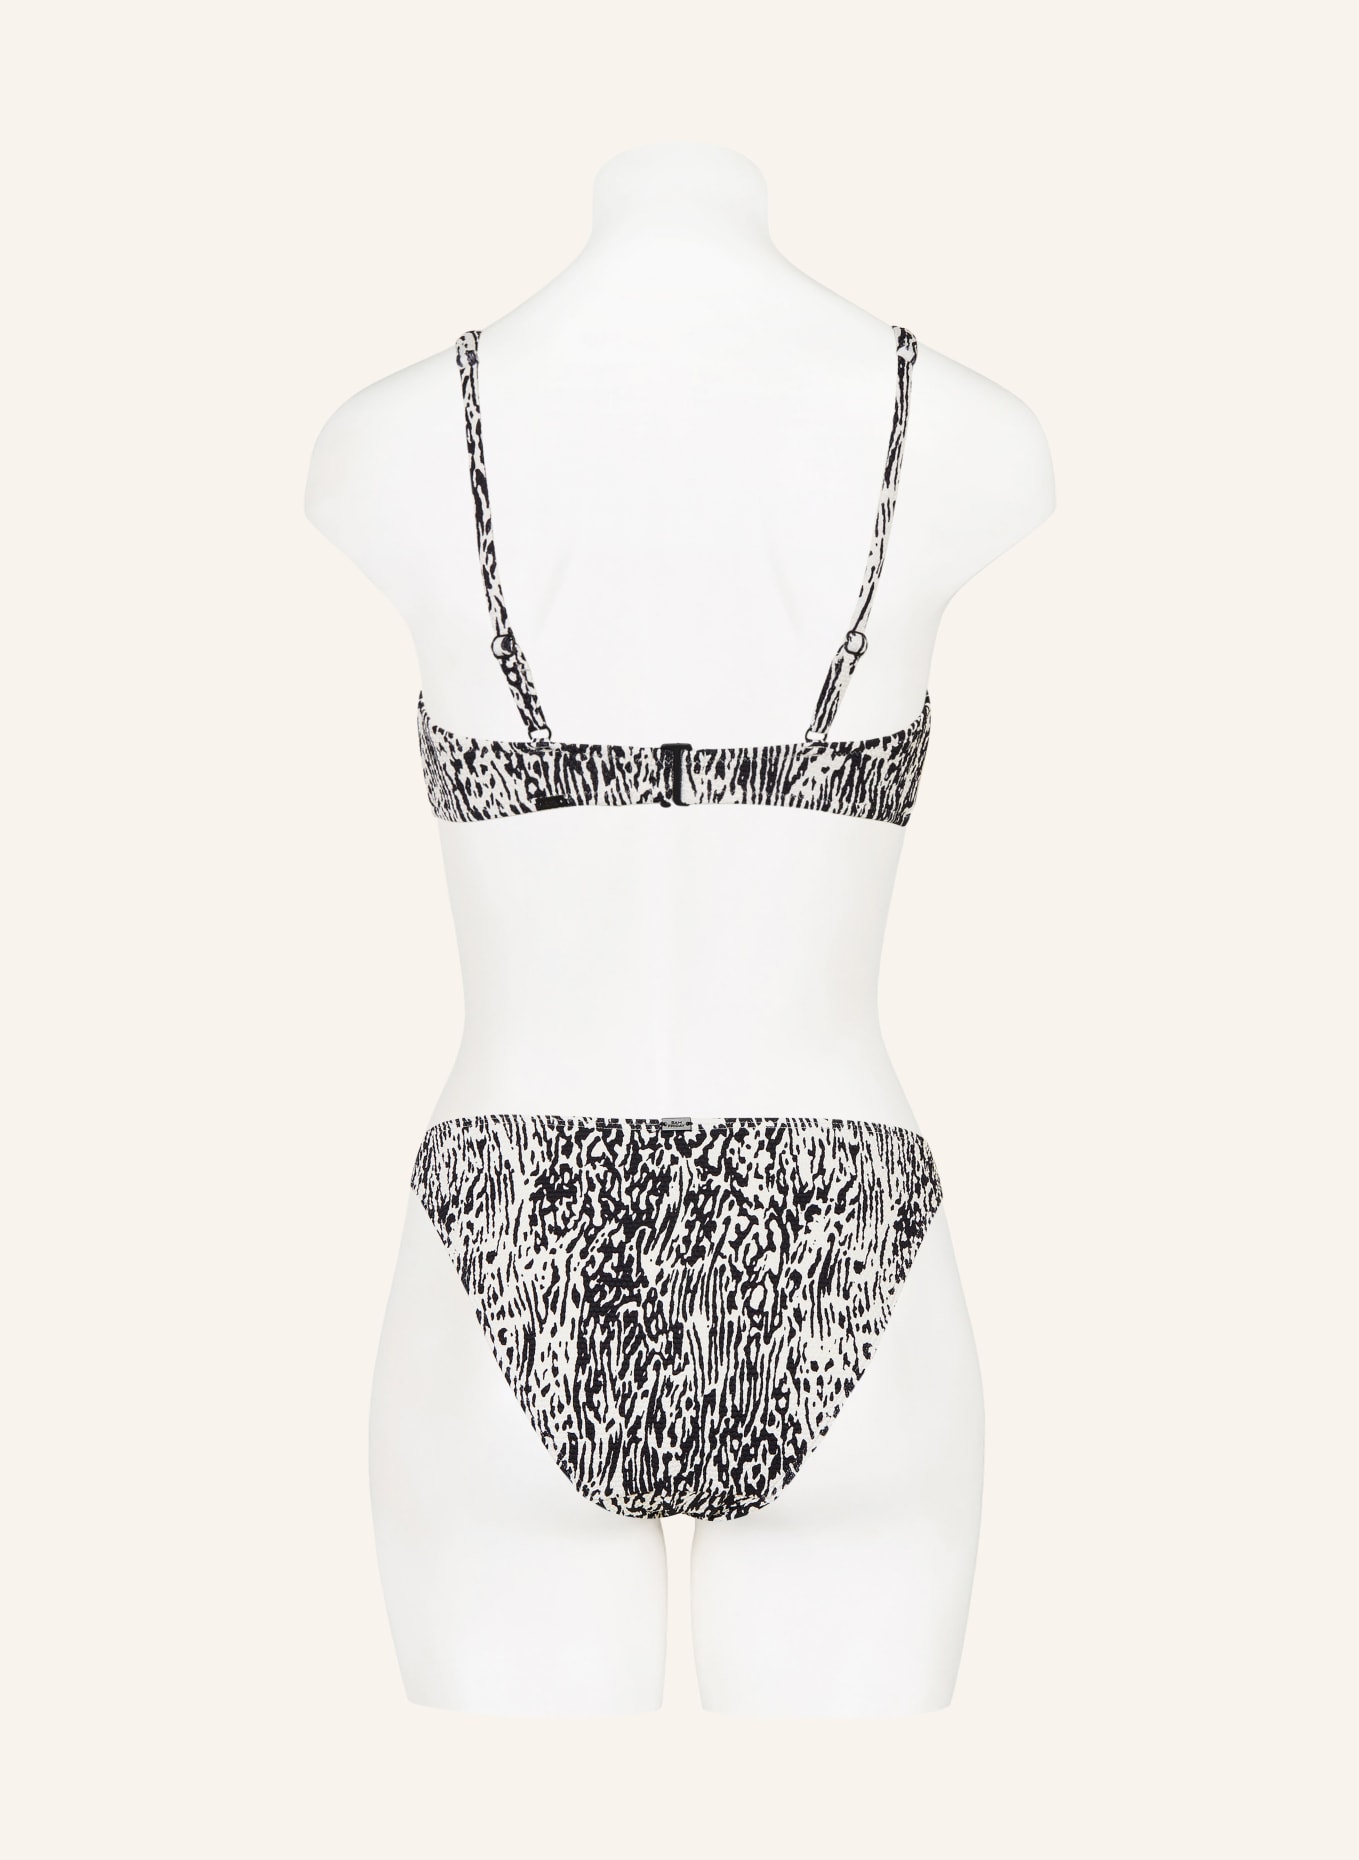 SAM FRIDAY Bralette bikini top SWASH, Color: BLACK/ WHITE (Image 3)